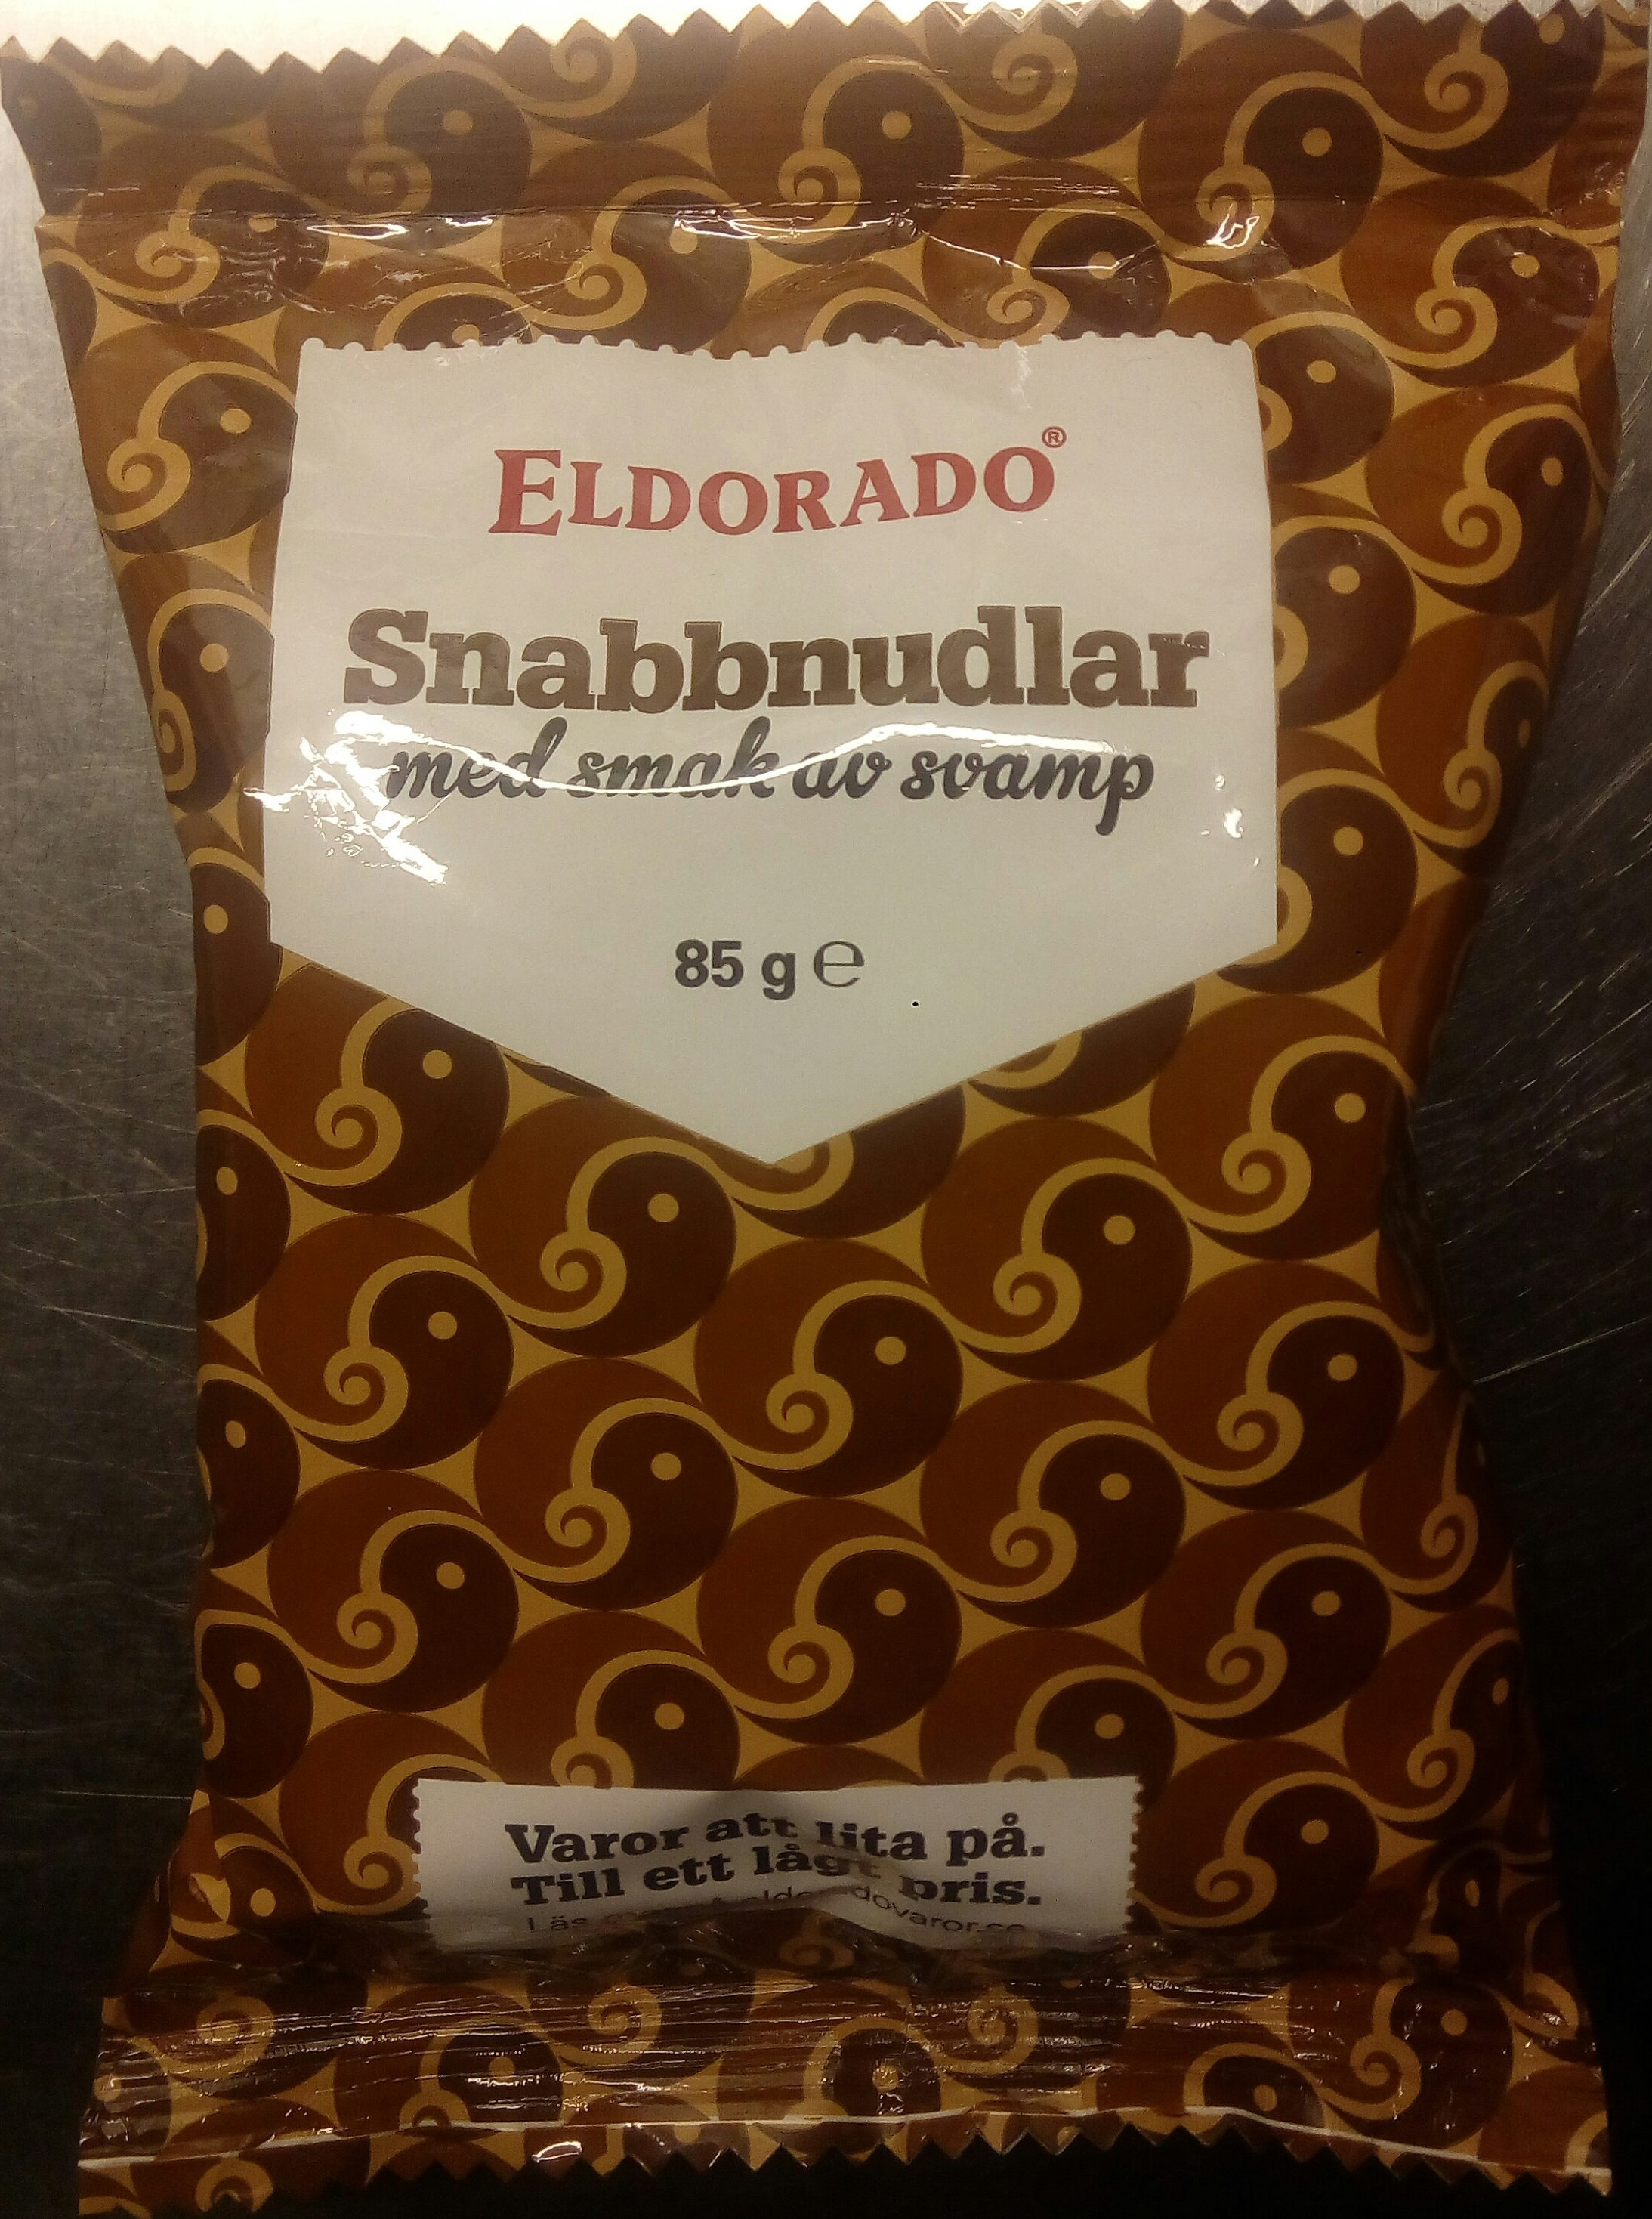 Eldorado Snabbnudlar med smak av svamp - Produkt